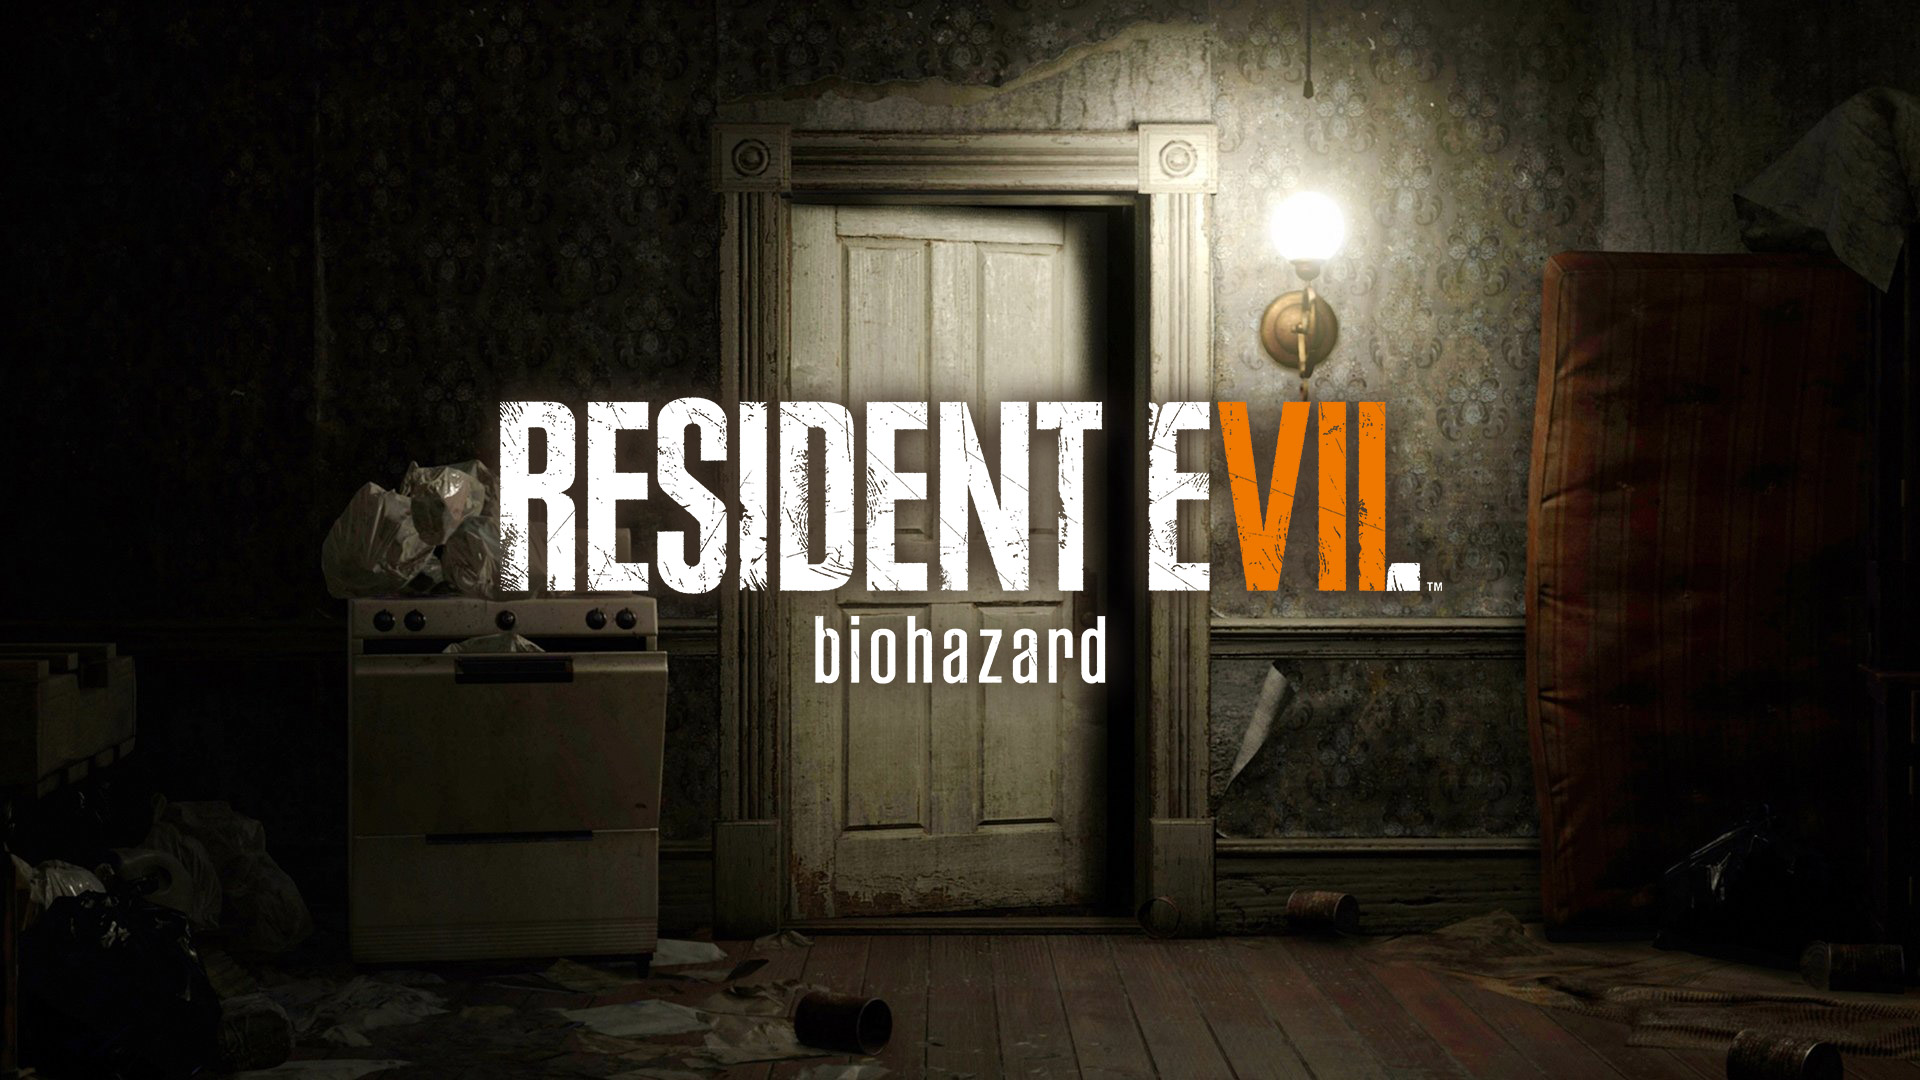 resident evil 7 biohazard wallpaper,text,adventure game,room,darkness,door